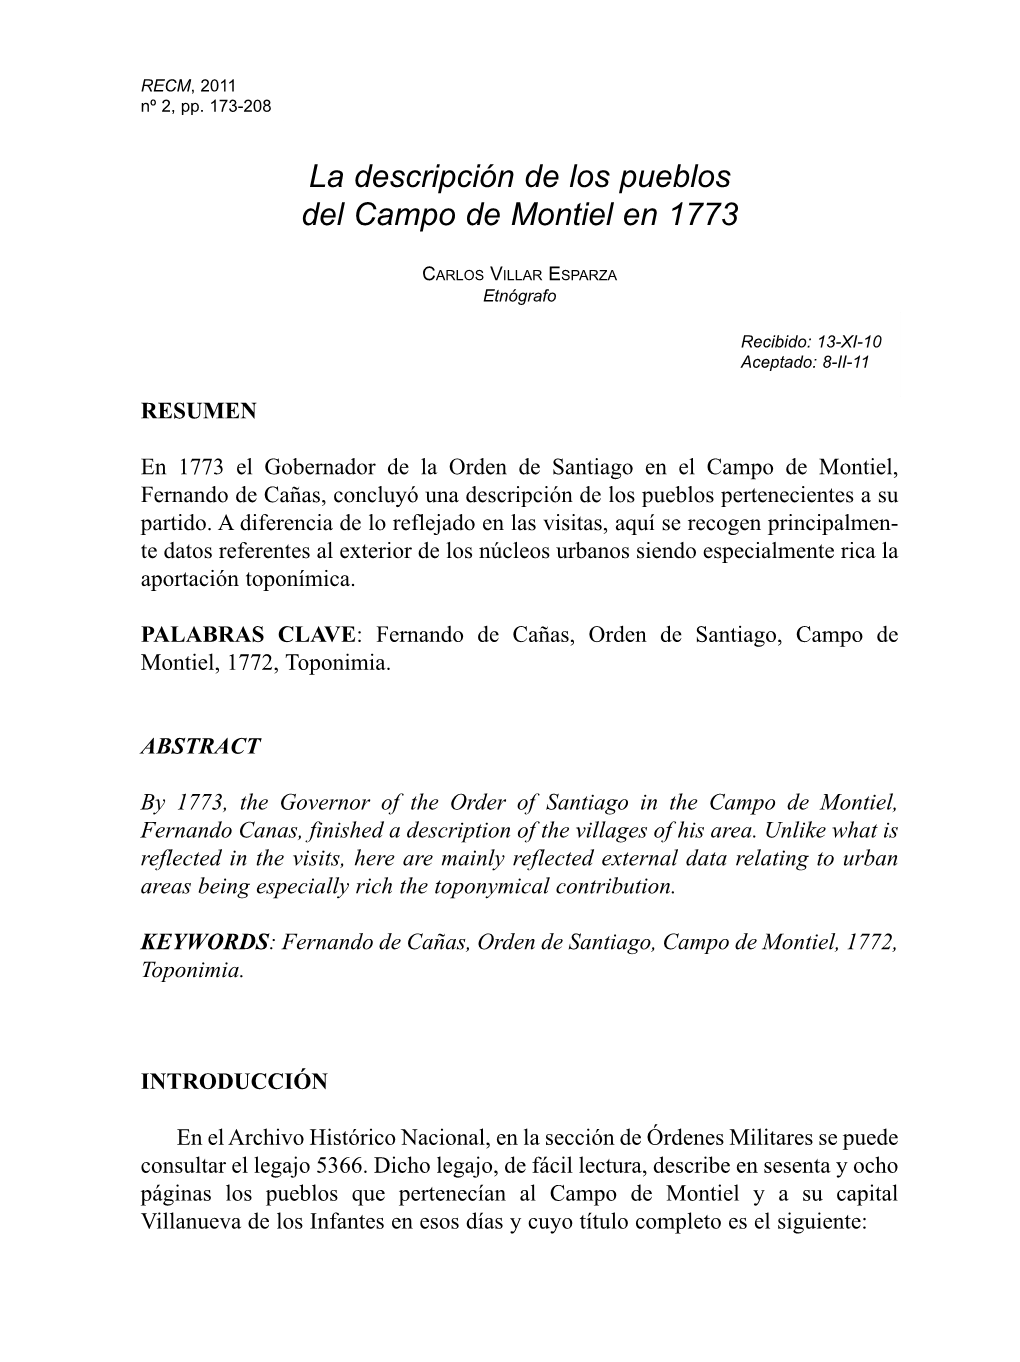 La Descripción De Los Pueblos Del Campo De Montiel En 1773